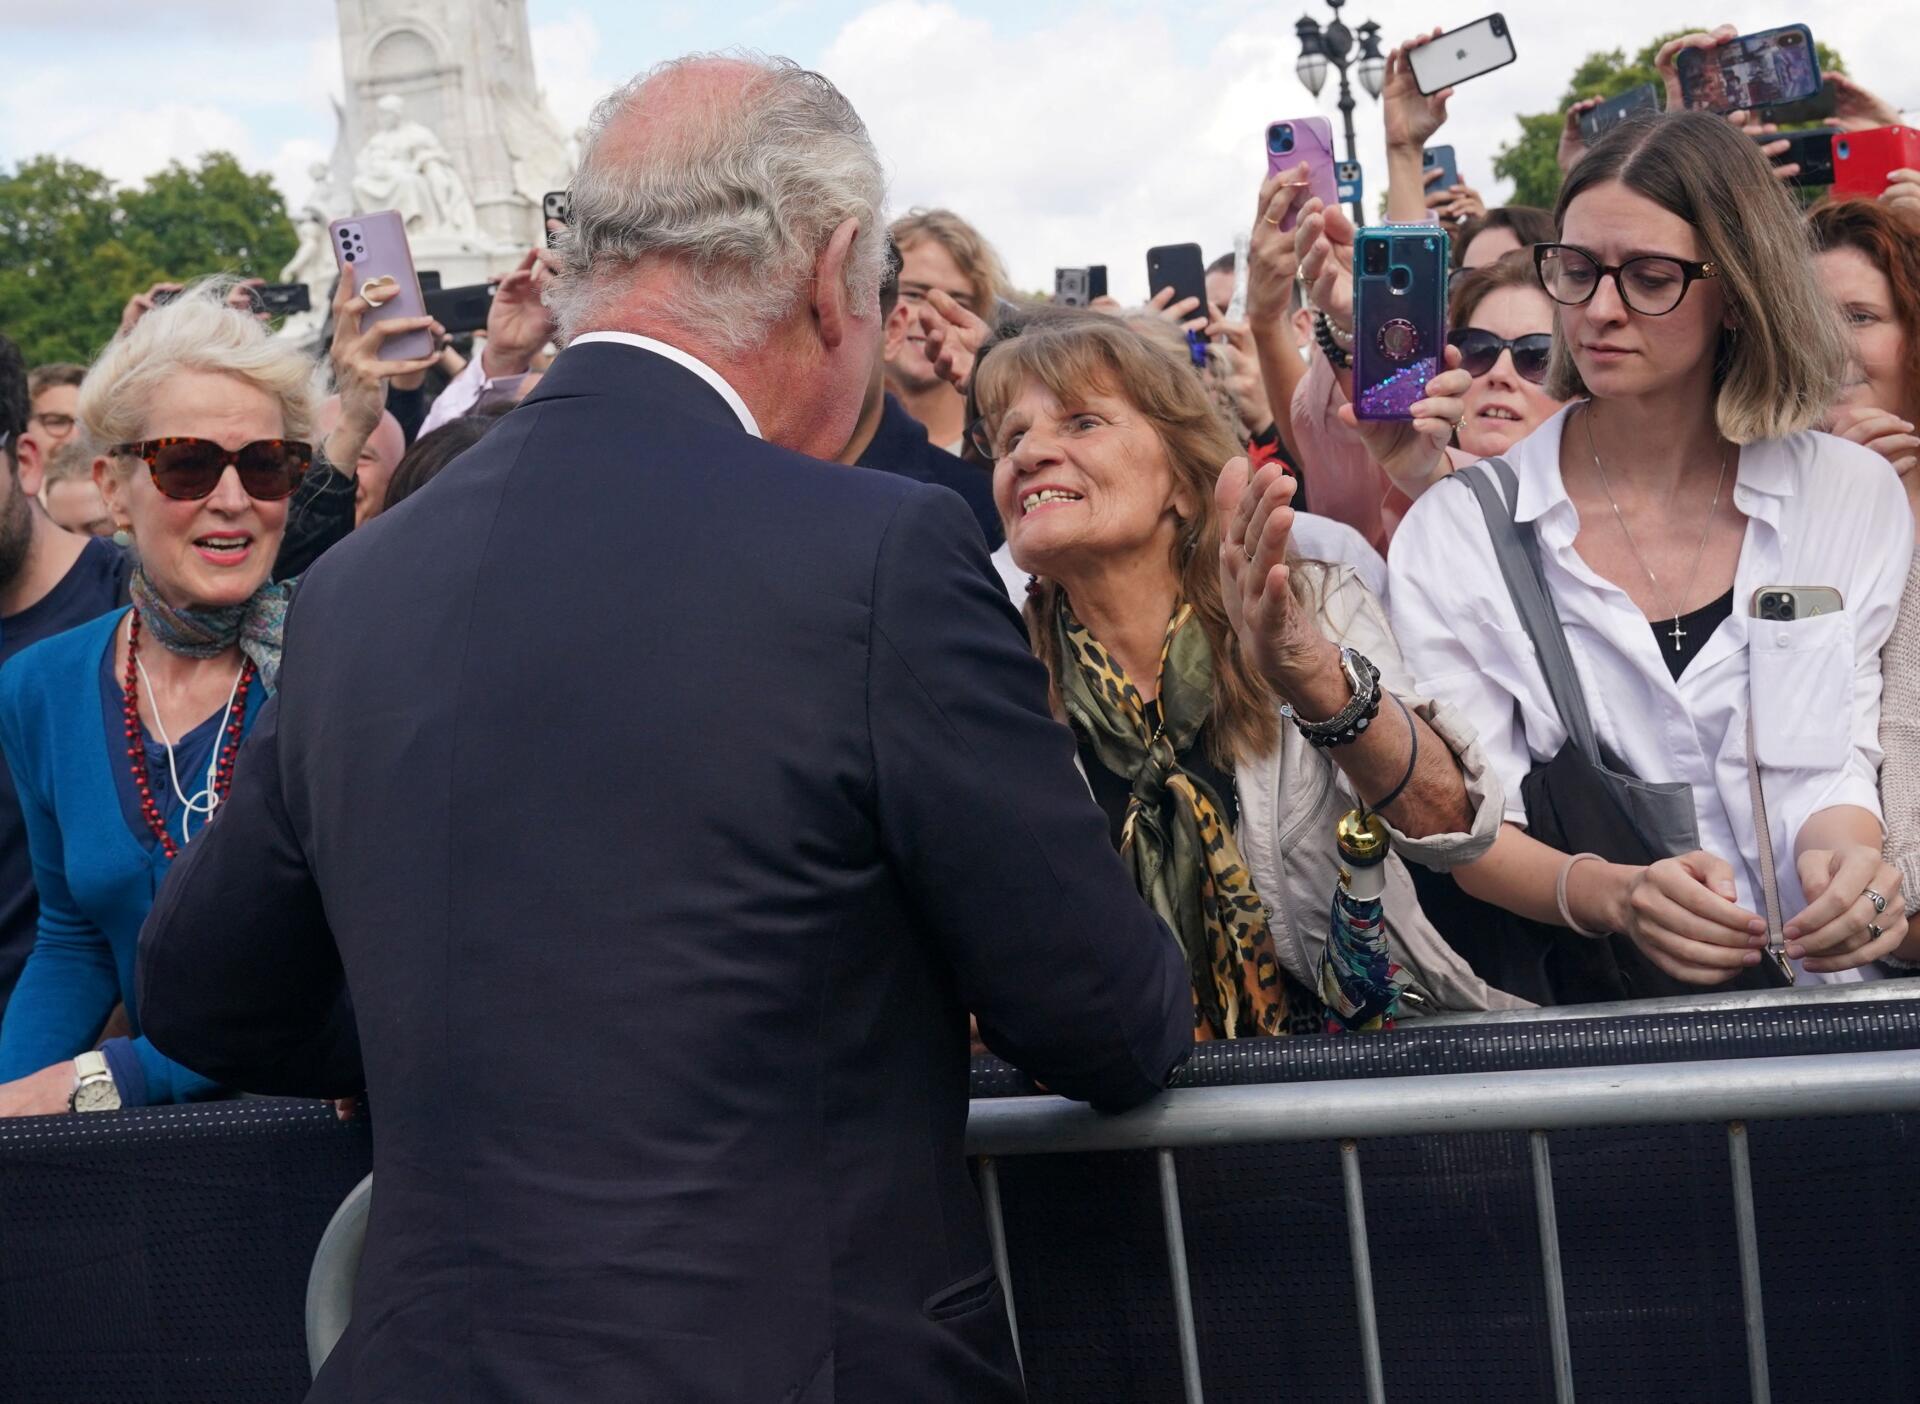   Carlos III saluda a la multitud por un momento frente al Palacio de Buckingham en Londres el 9 de septiembre de 2022.